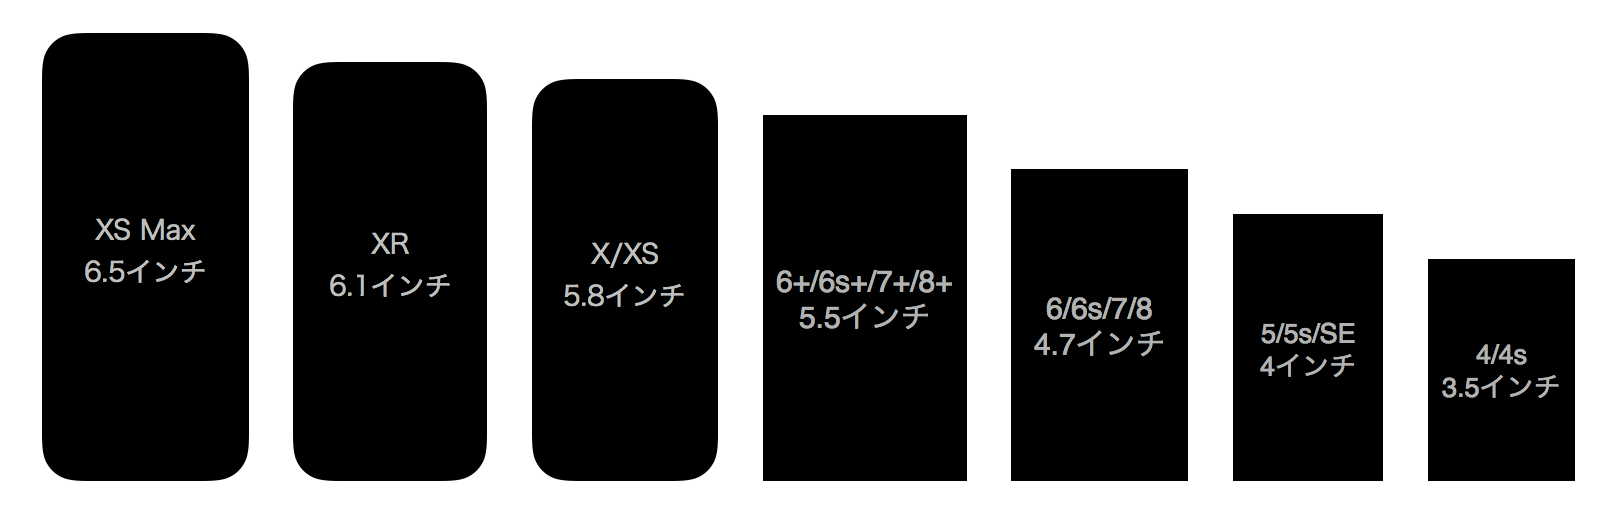 iPhone XS Max/XR/XS〜4sまでの歴代iPhoneの画面サイズ比較まとめ | SmCo ...